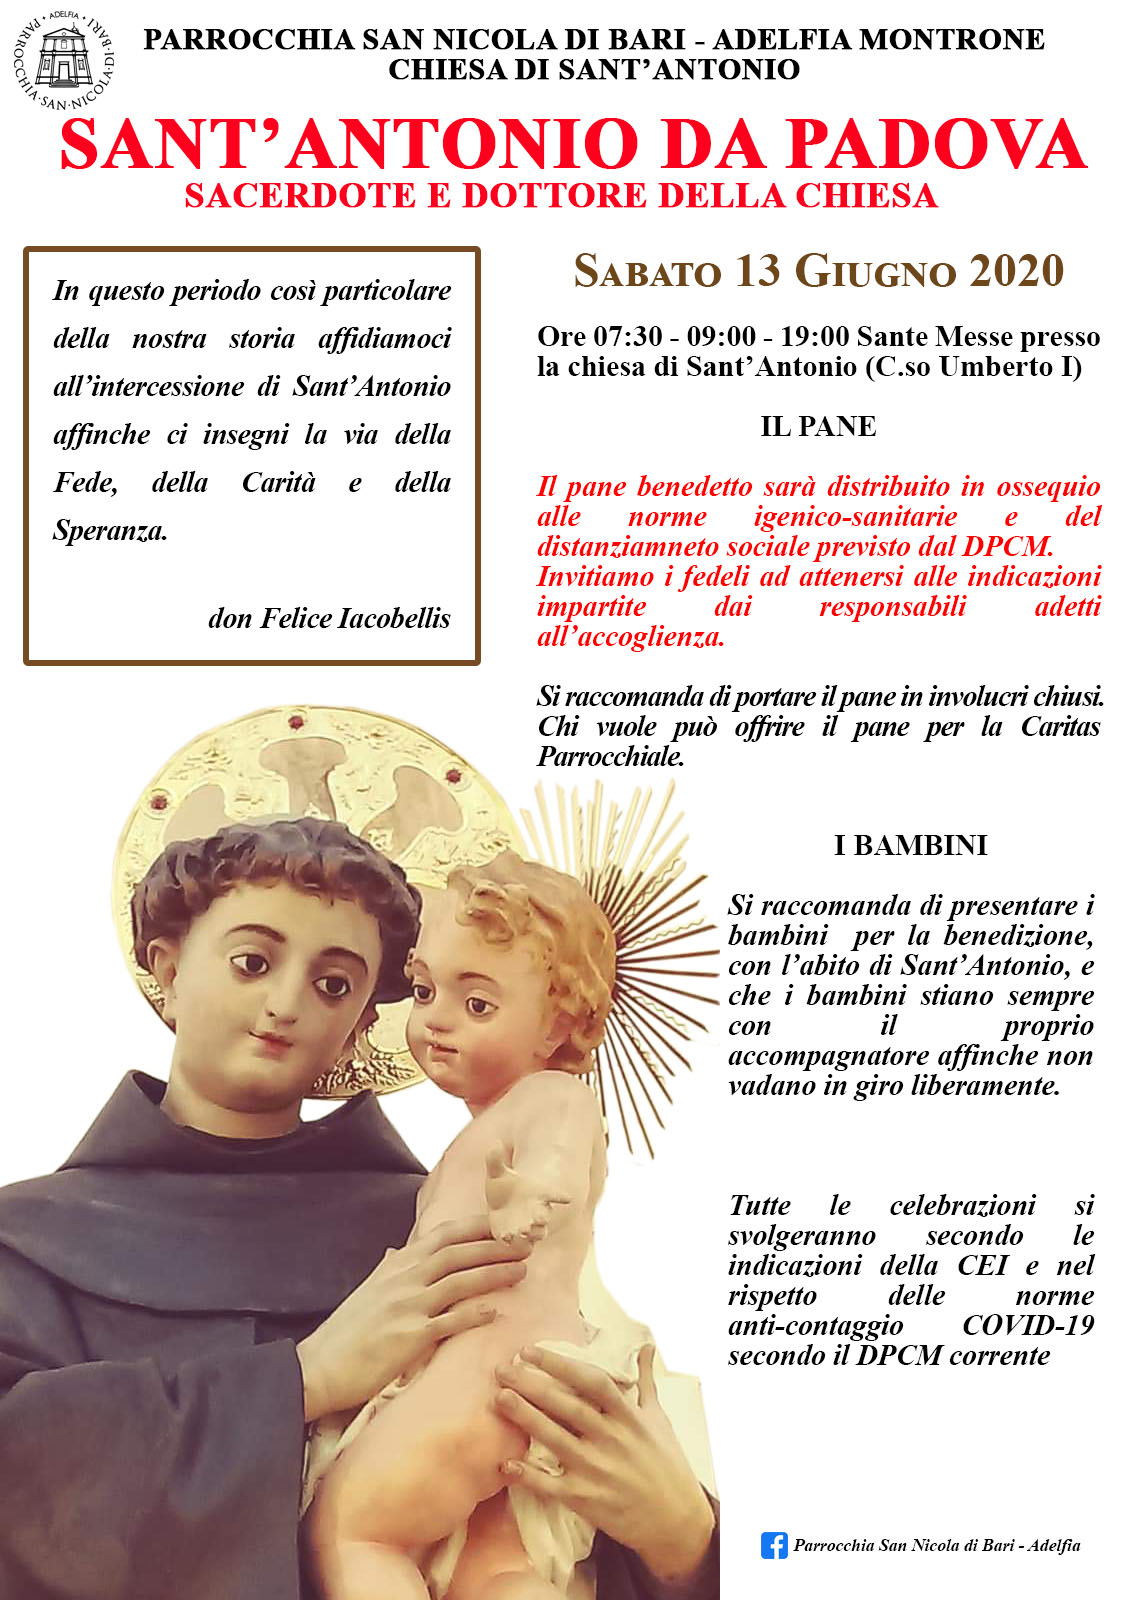 Sant'Antonio da padova 2020